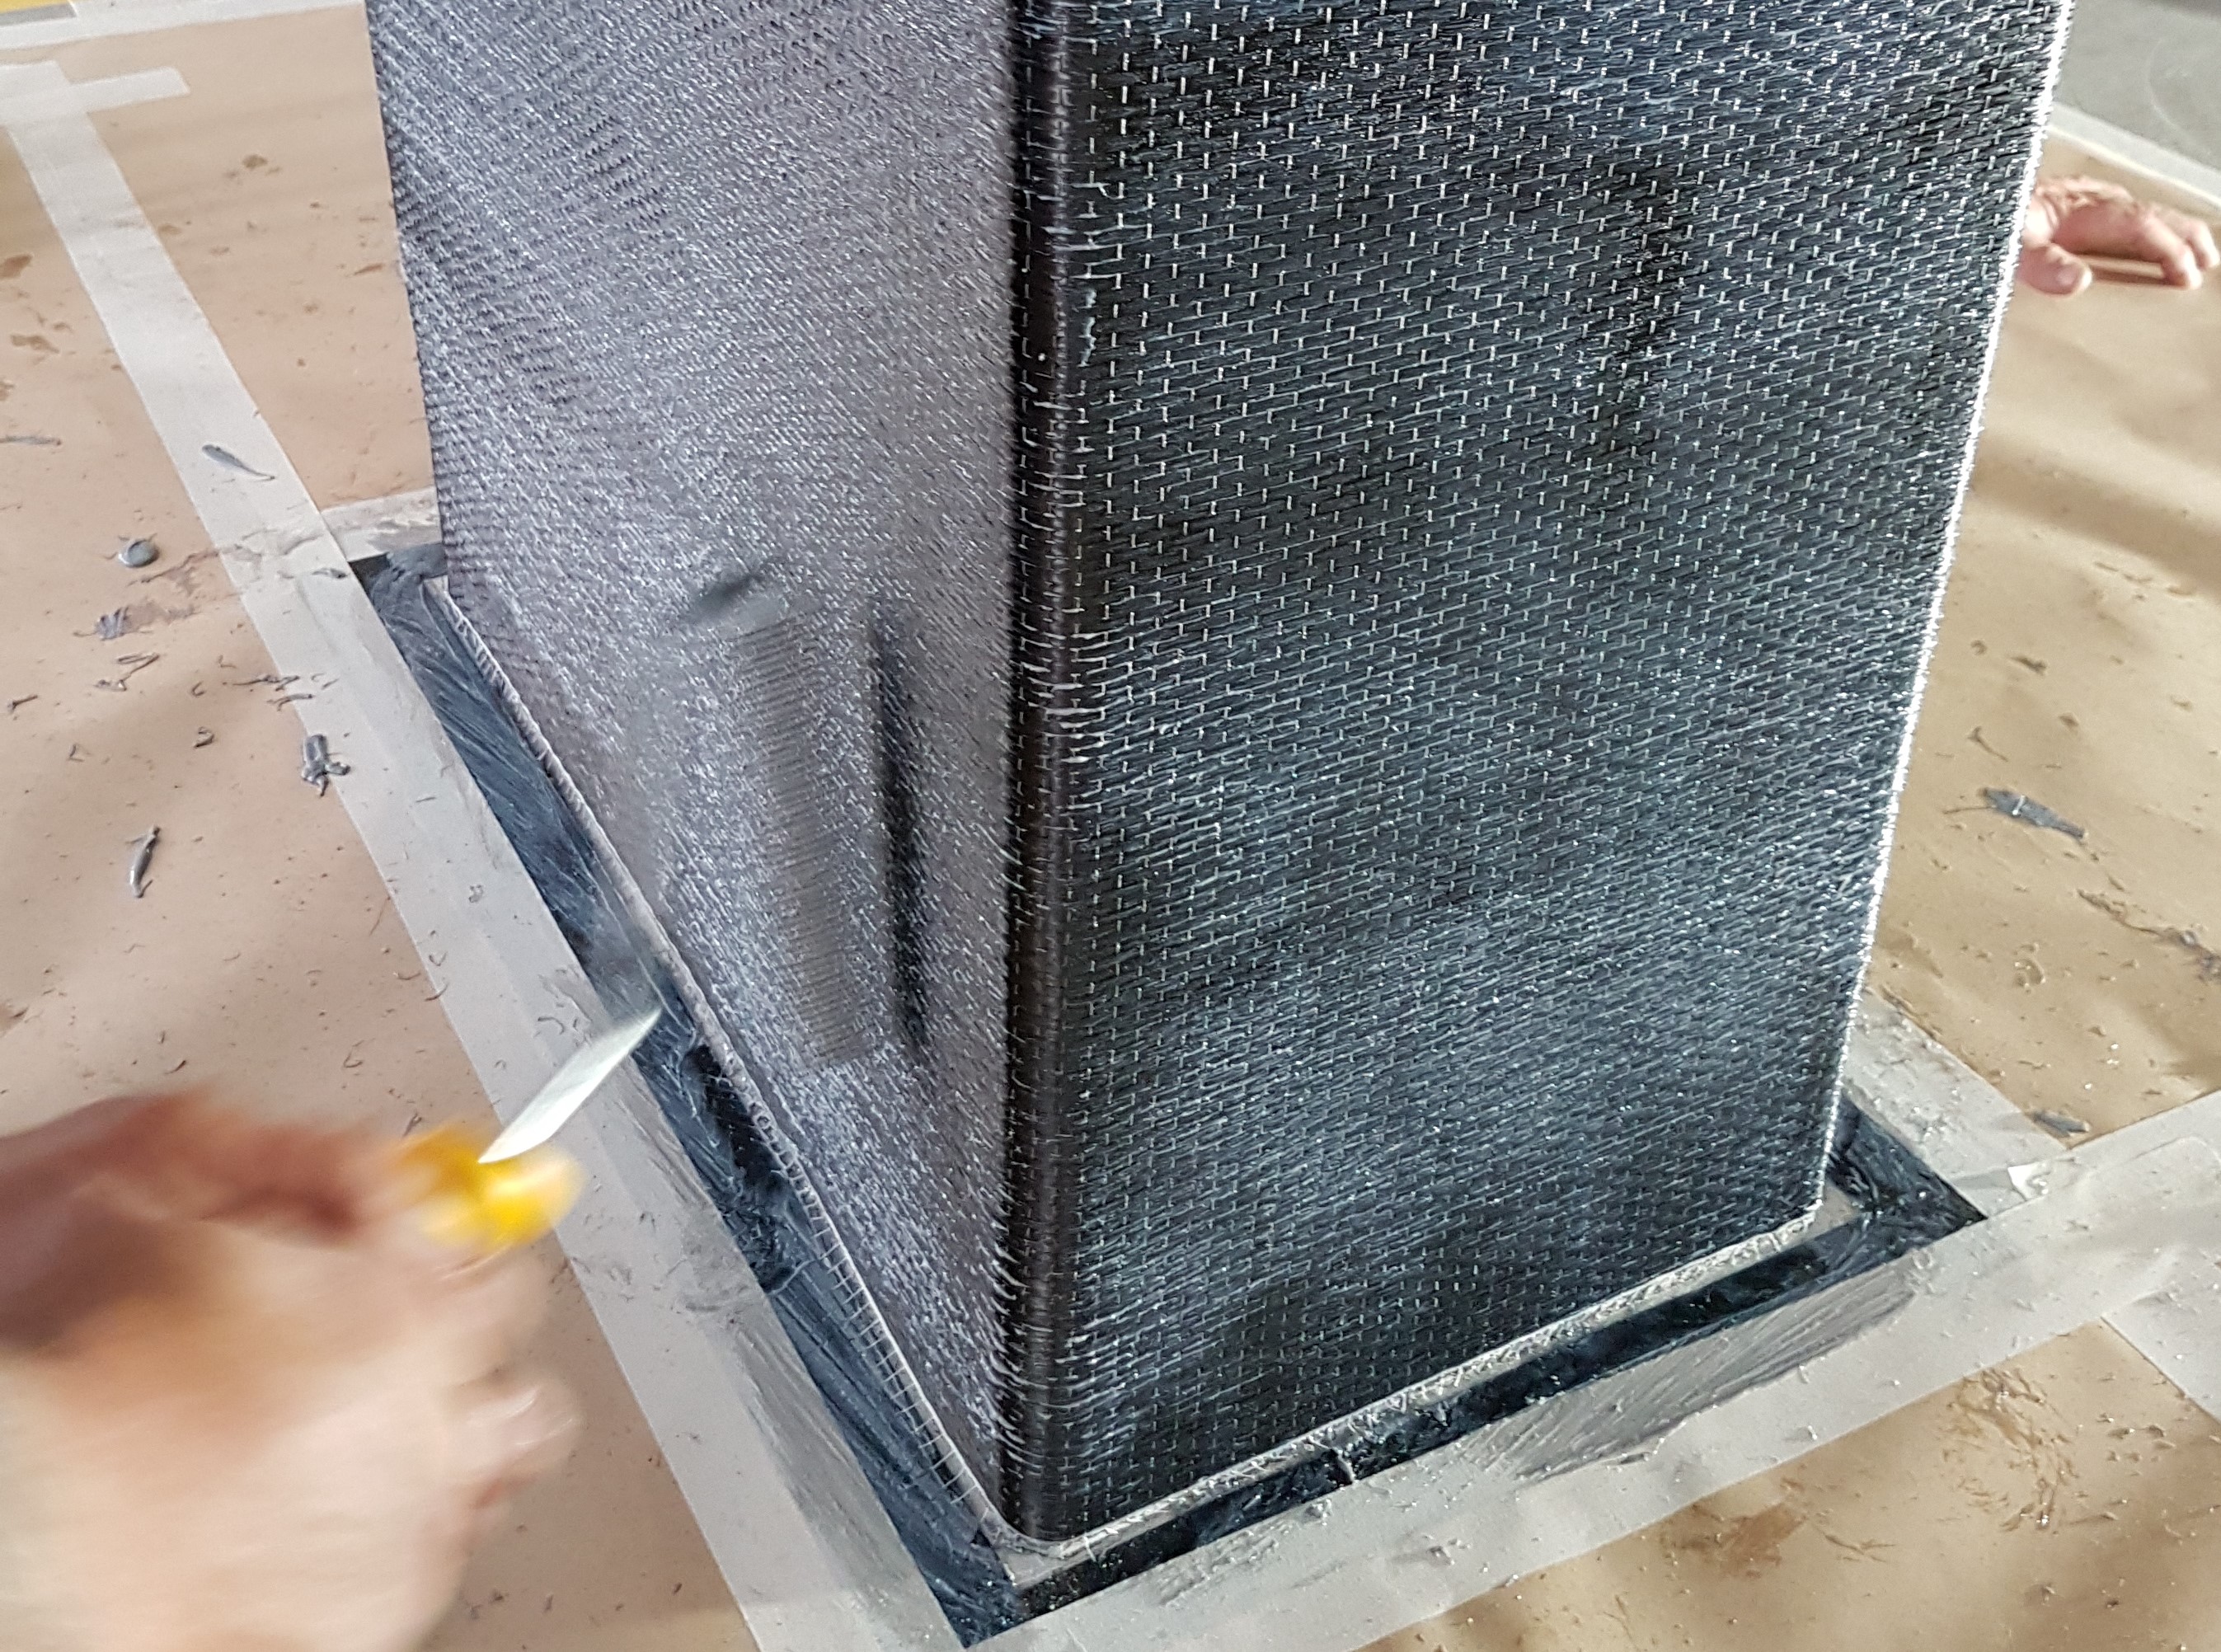 Concrete repair with Carbon Fibre